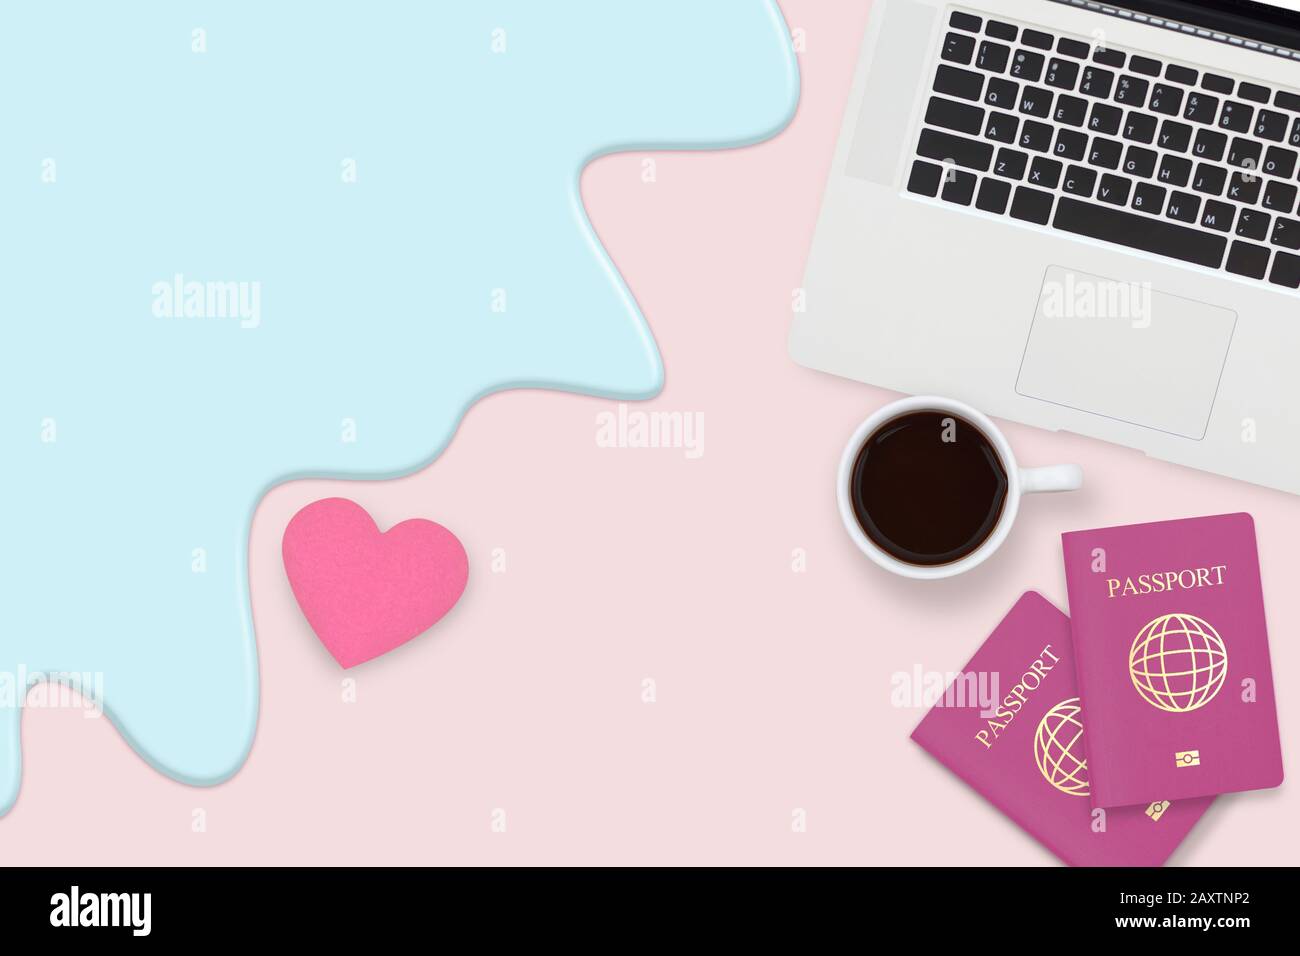 Flacher Paar-Pass, Tasse Kaffee und Computer-Laptop auf pastellpinkfarbenem Hintergrund mit Kopierraum, der mit rotem Herz und blauer Welle verziert ist Stockfoto